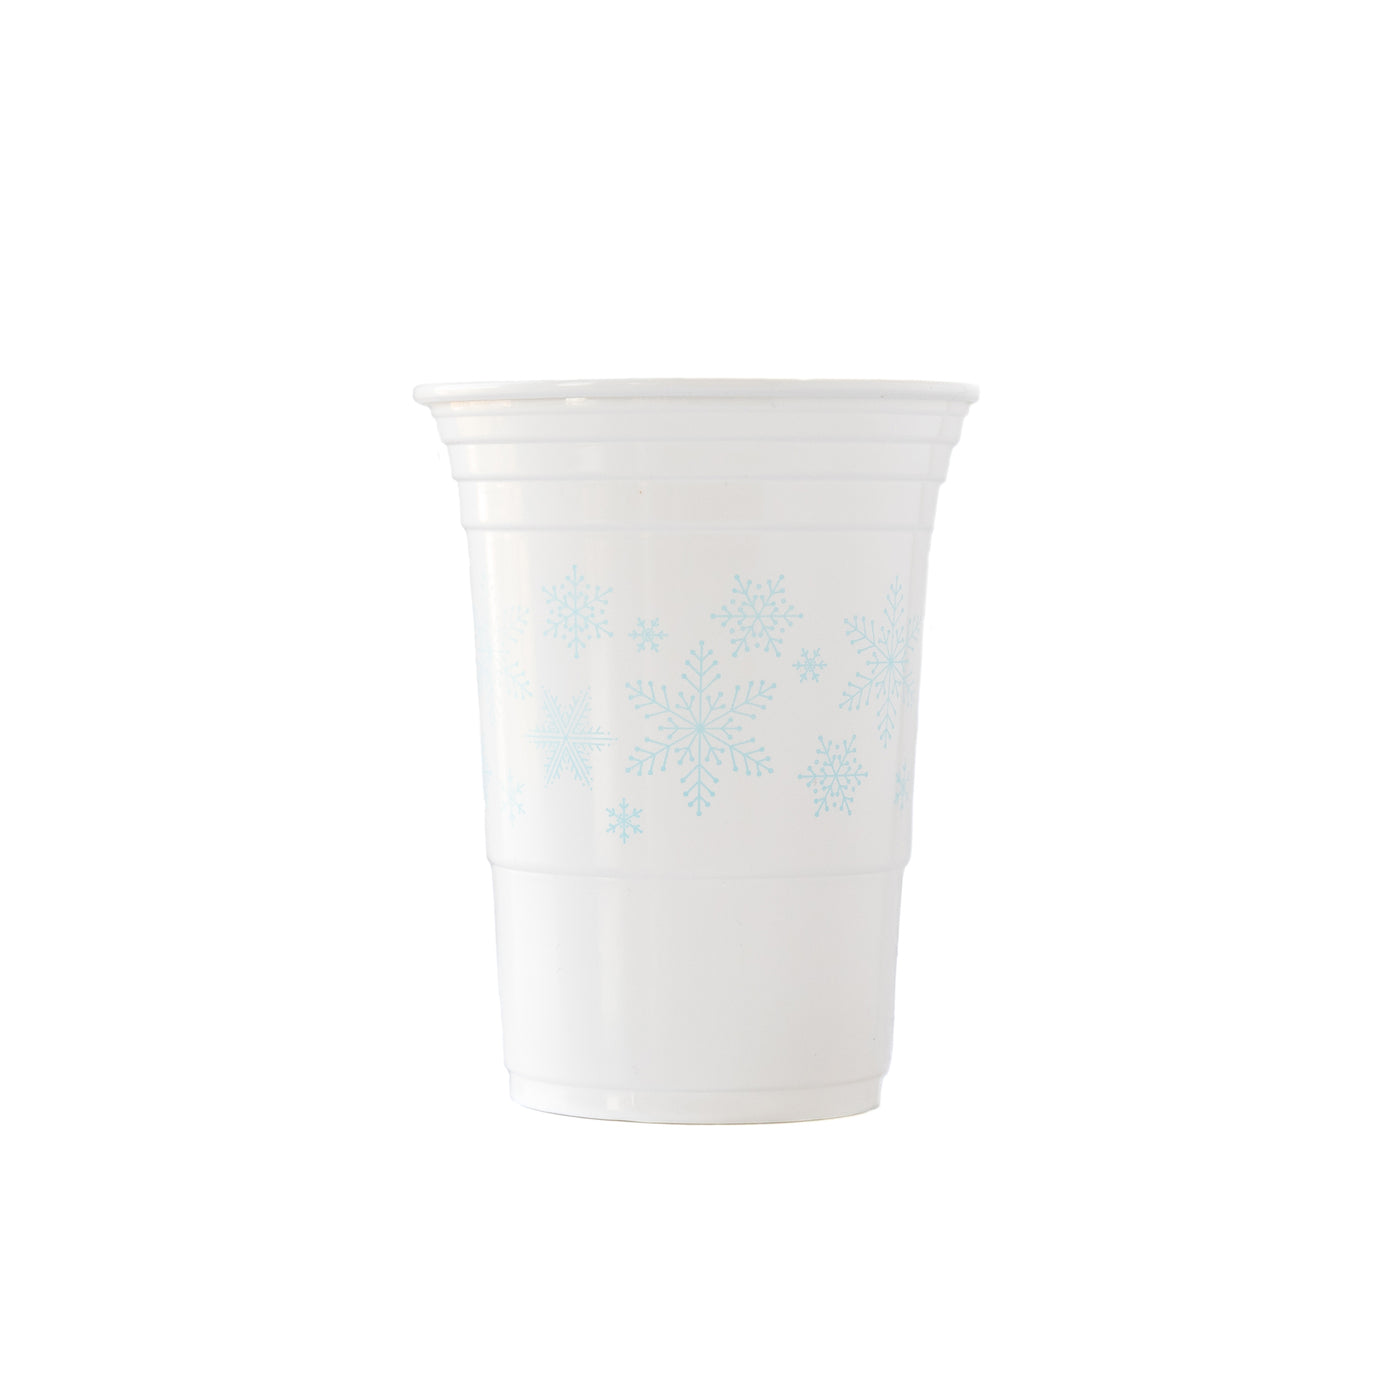 PLTC24 - Snow Flakes 16 oz Plastic Cups (24 pcs)